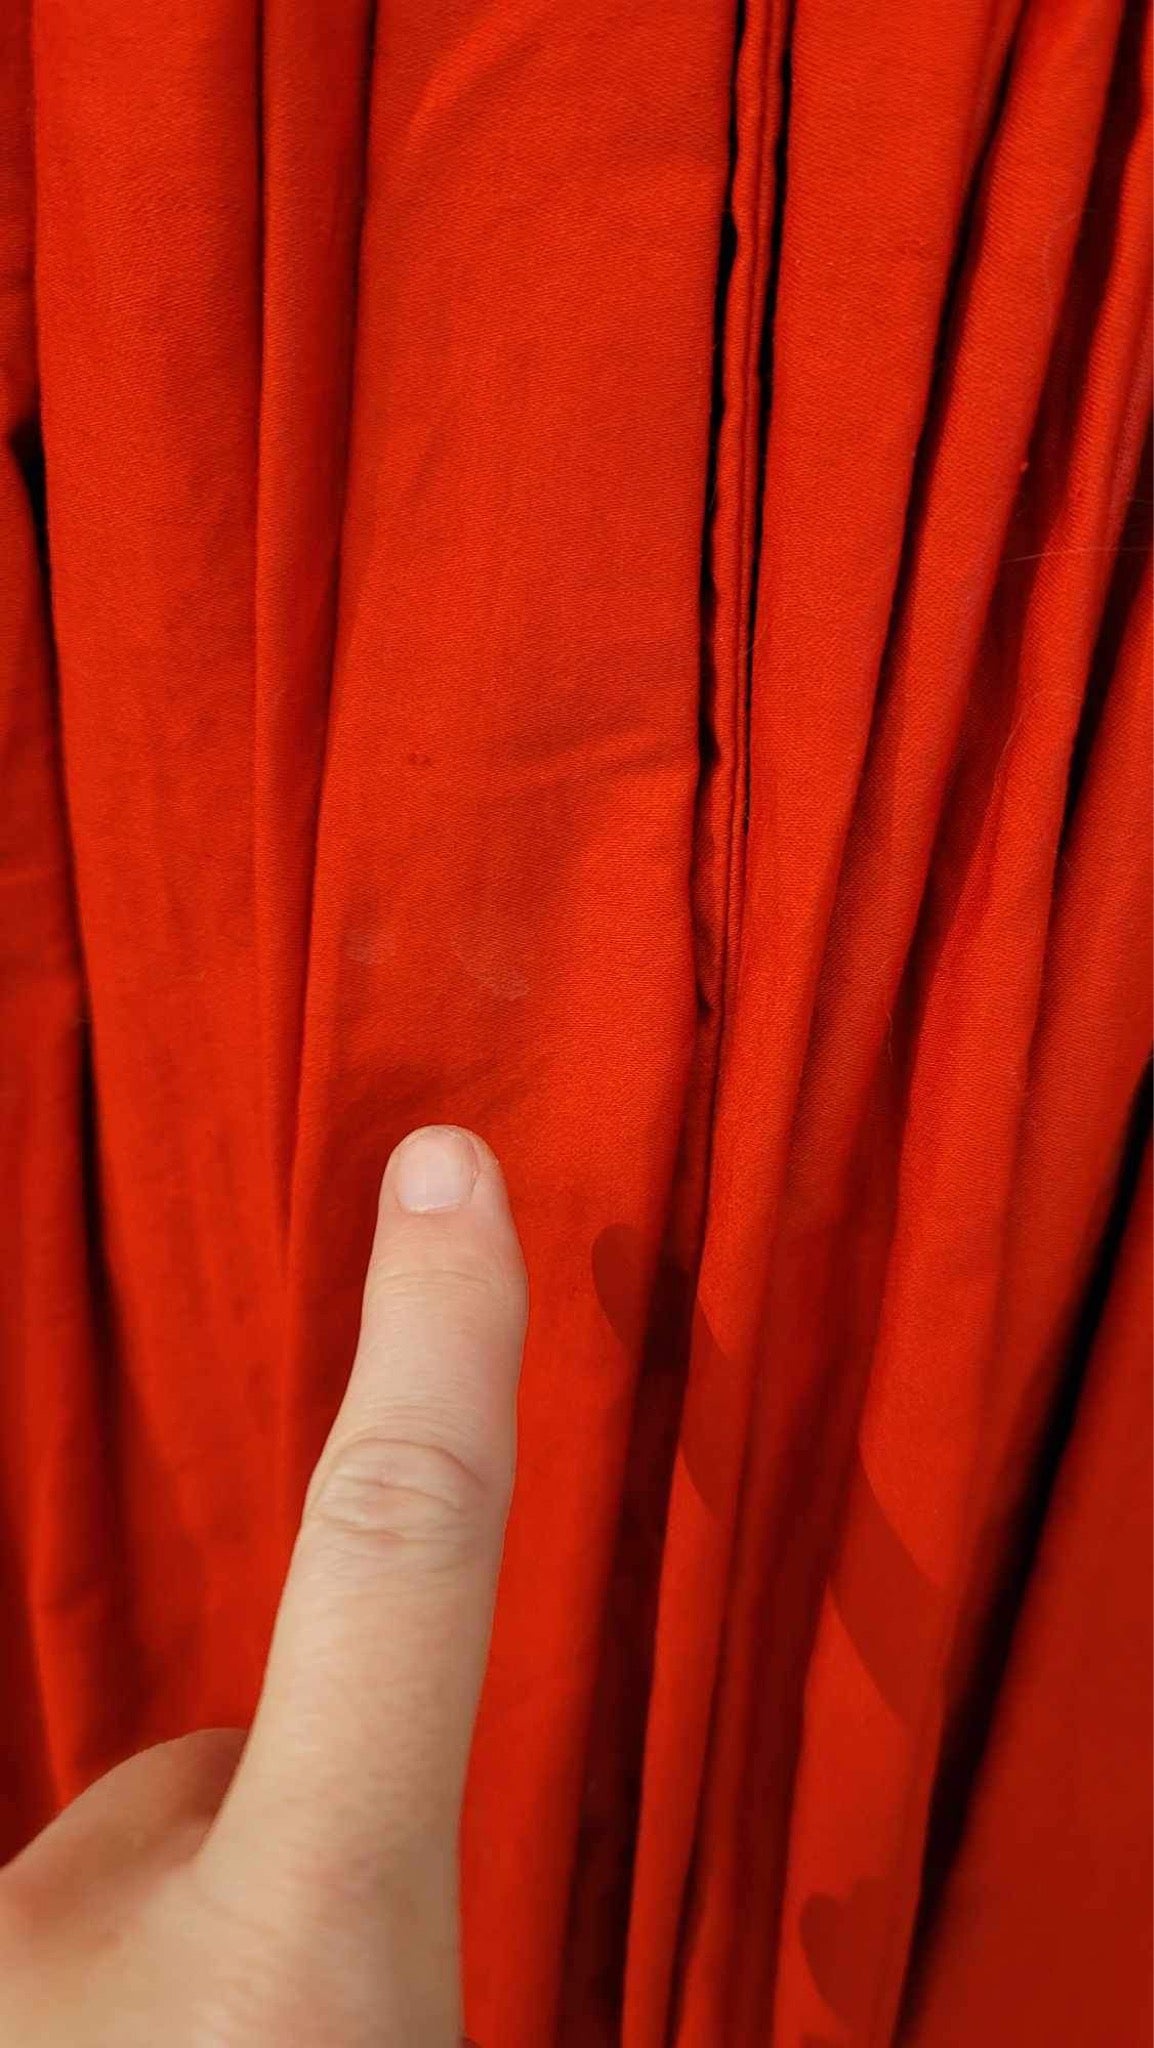 Red Cotton Dress with Cumberbund